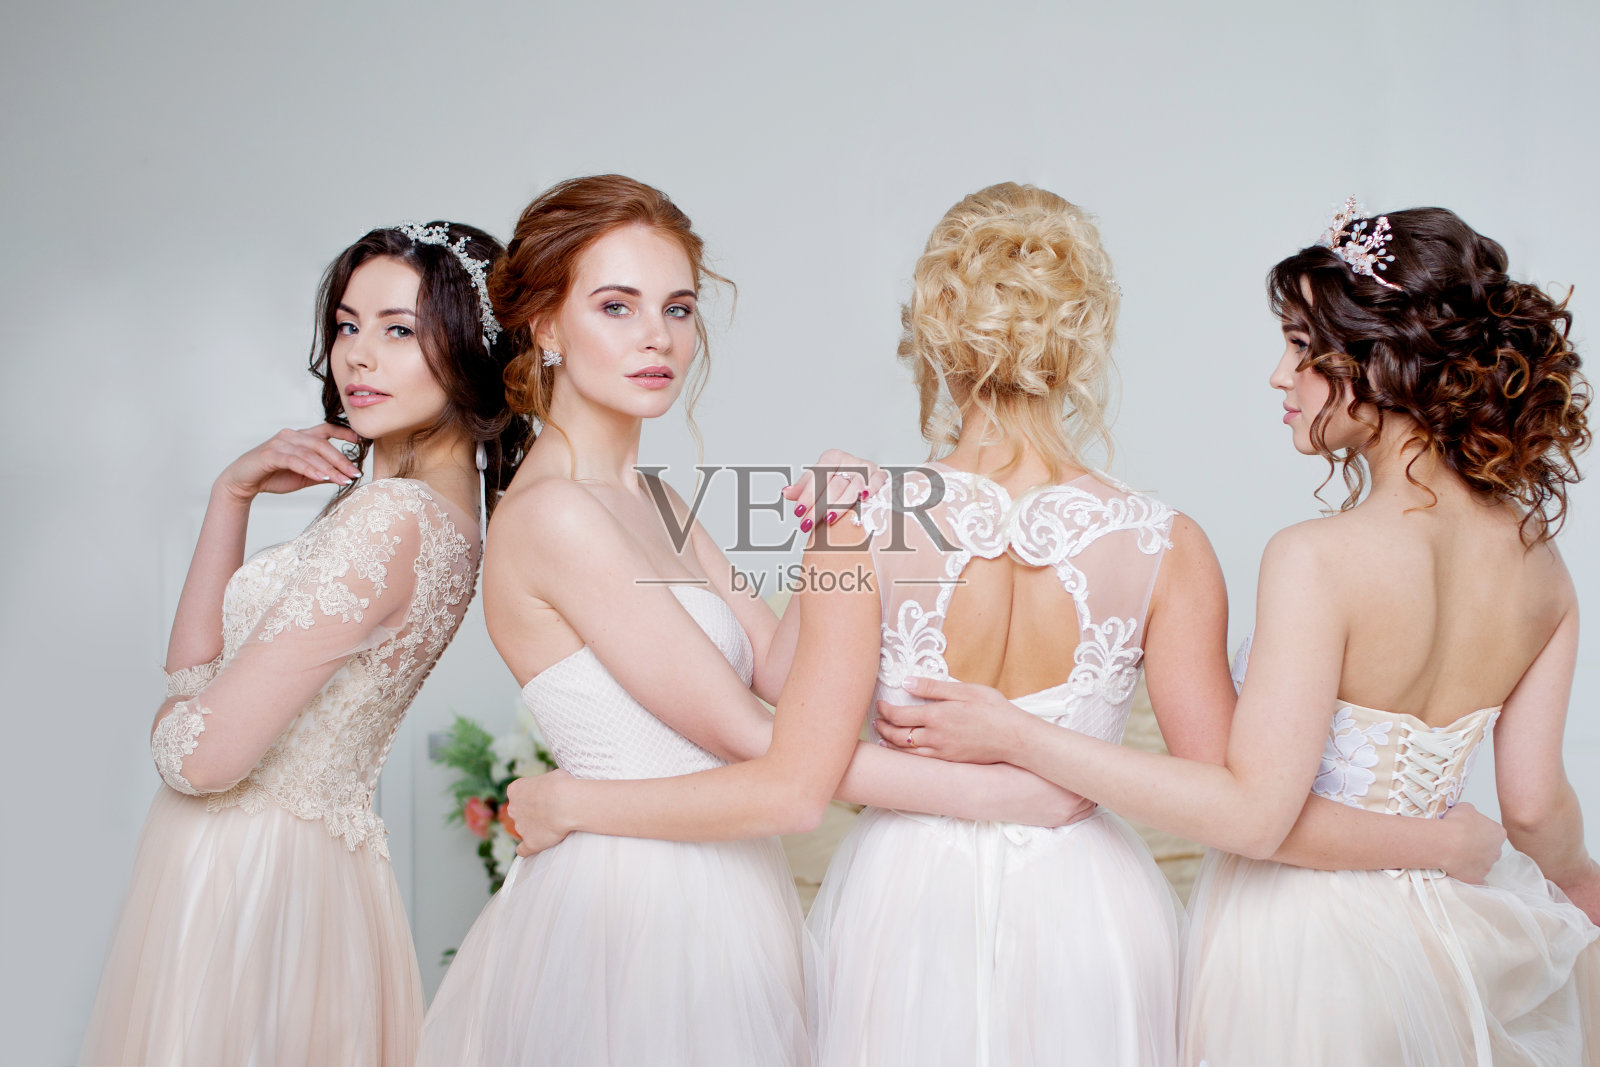 新娘在婚礼沙龙。四个美丽的女孩相互拥抱着。背部，特写蕾丝裙照片摄影图片